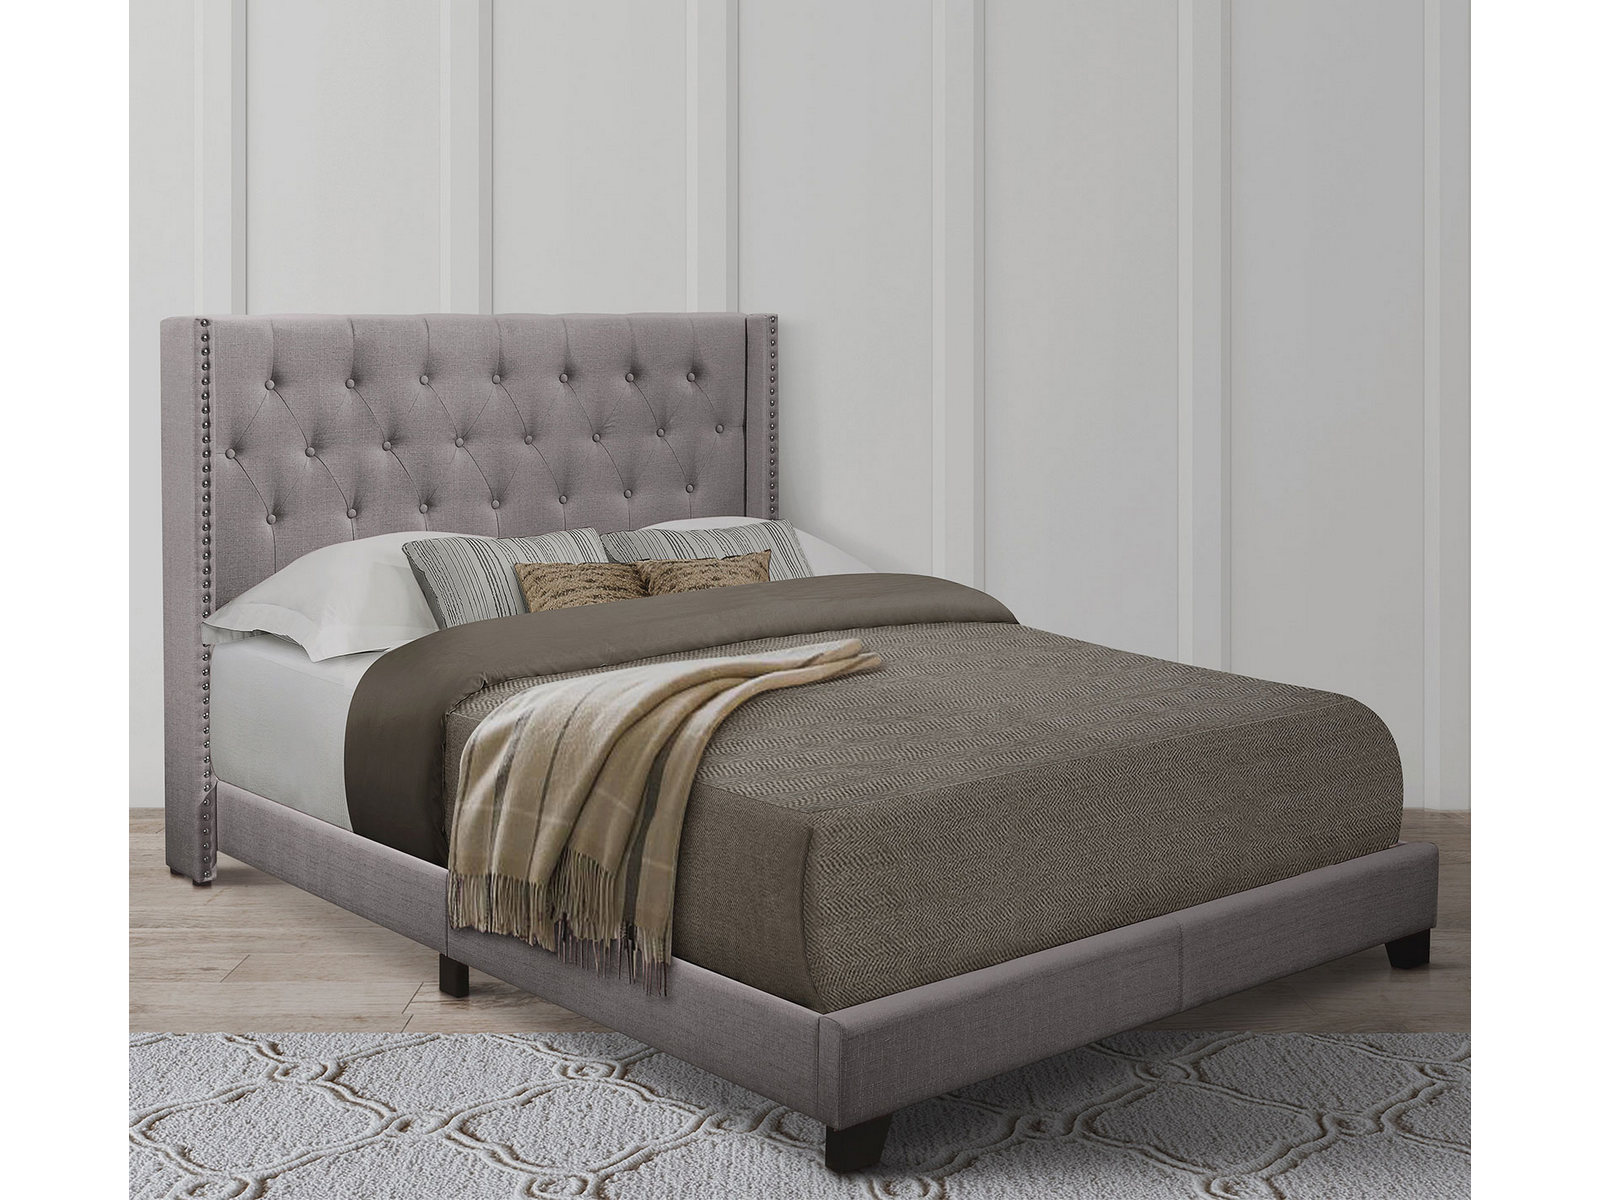 Homelegance Upholstered Bed Set | Full | Avery Bed Frame & Headboard | Gray